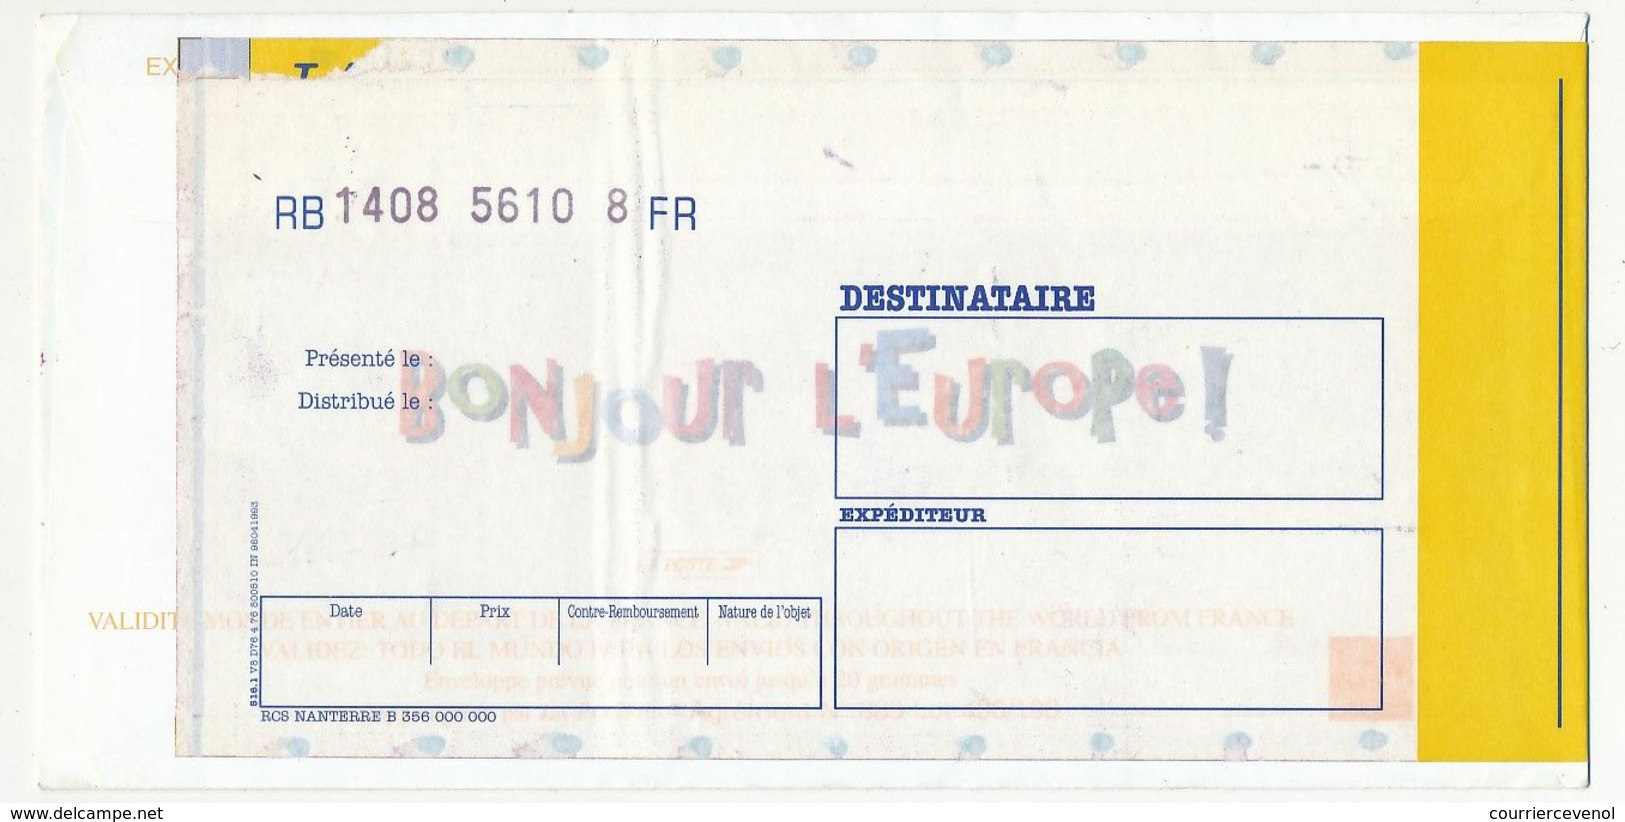 FRANCE => Entier "MERCI" Repiquage "Bonjour L'Europe" - Session Du Parlement 5/10/1999 + Vignette Santé Publique - Umschläge Mit Aufdruck (vor 1995)